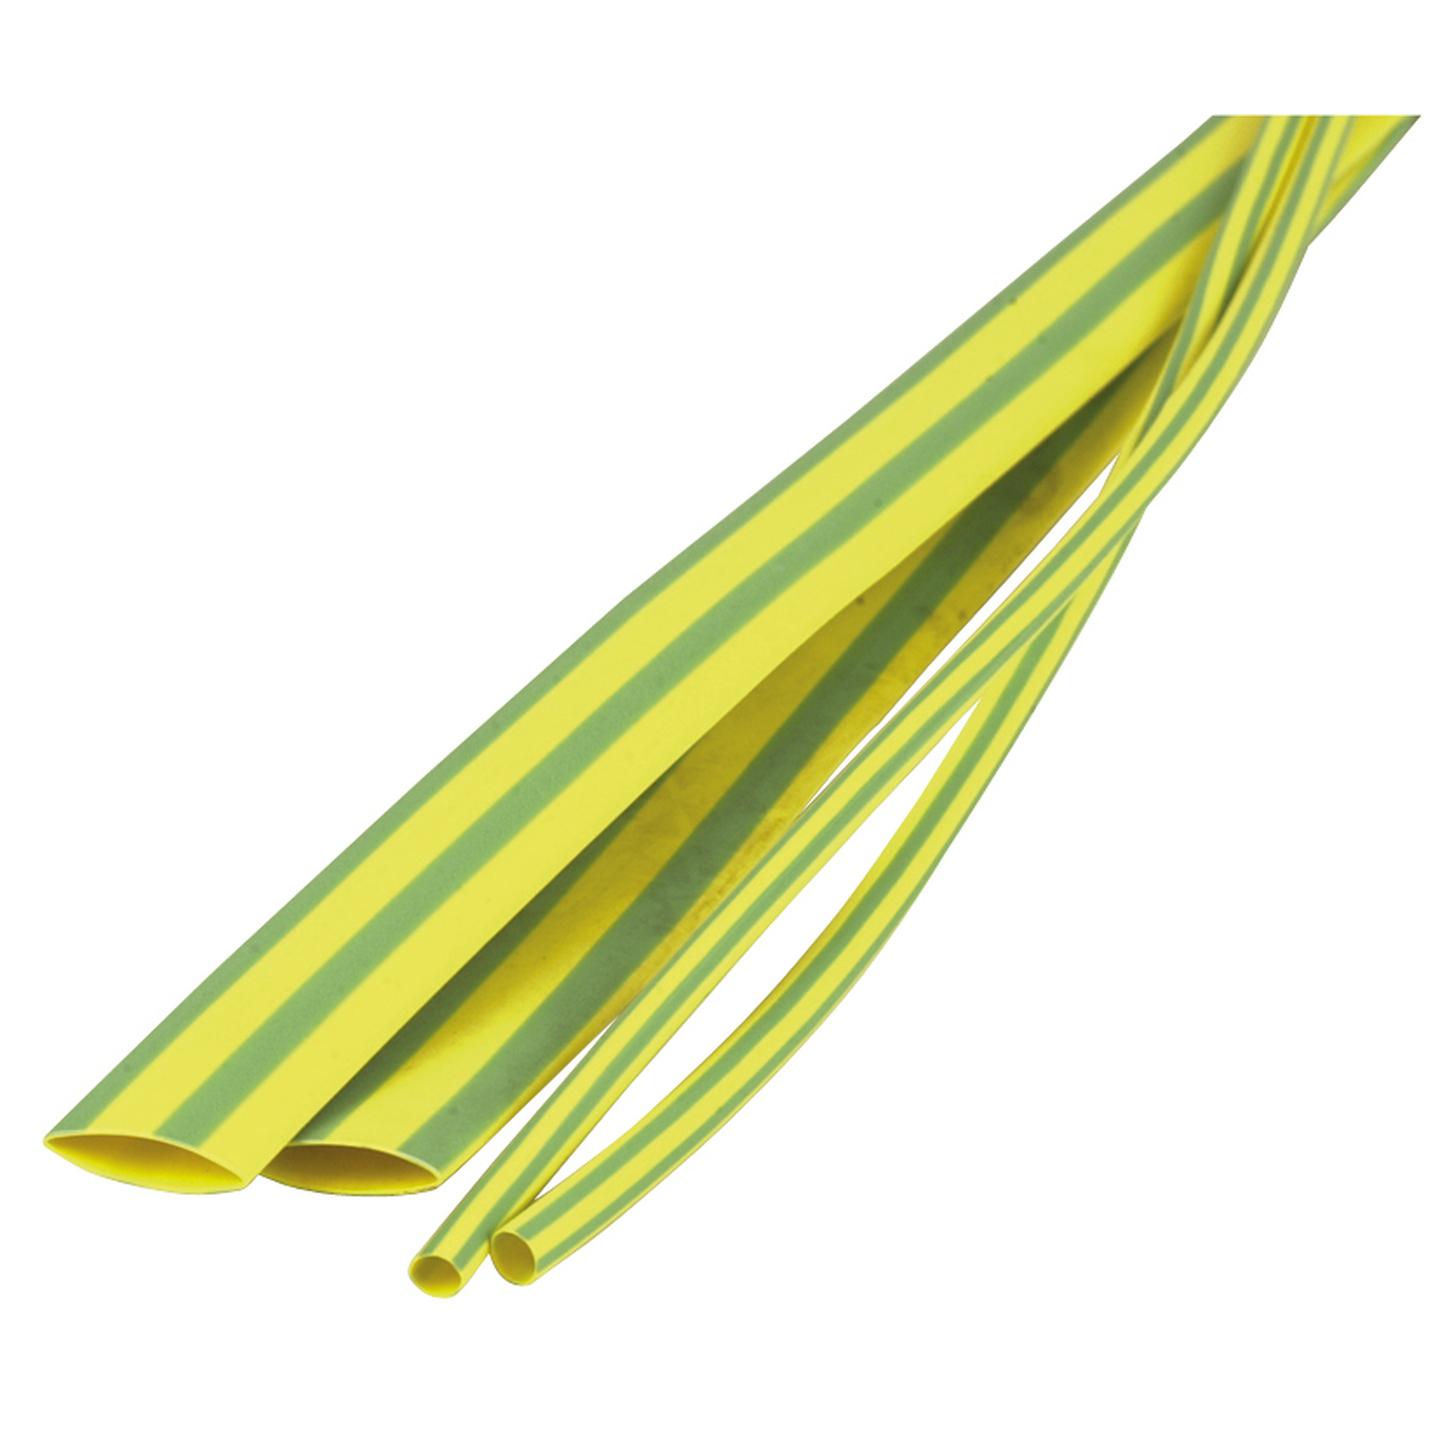 3mm Green/Yellow Heatshrink Tubing